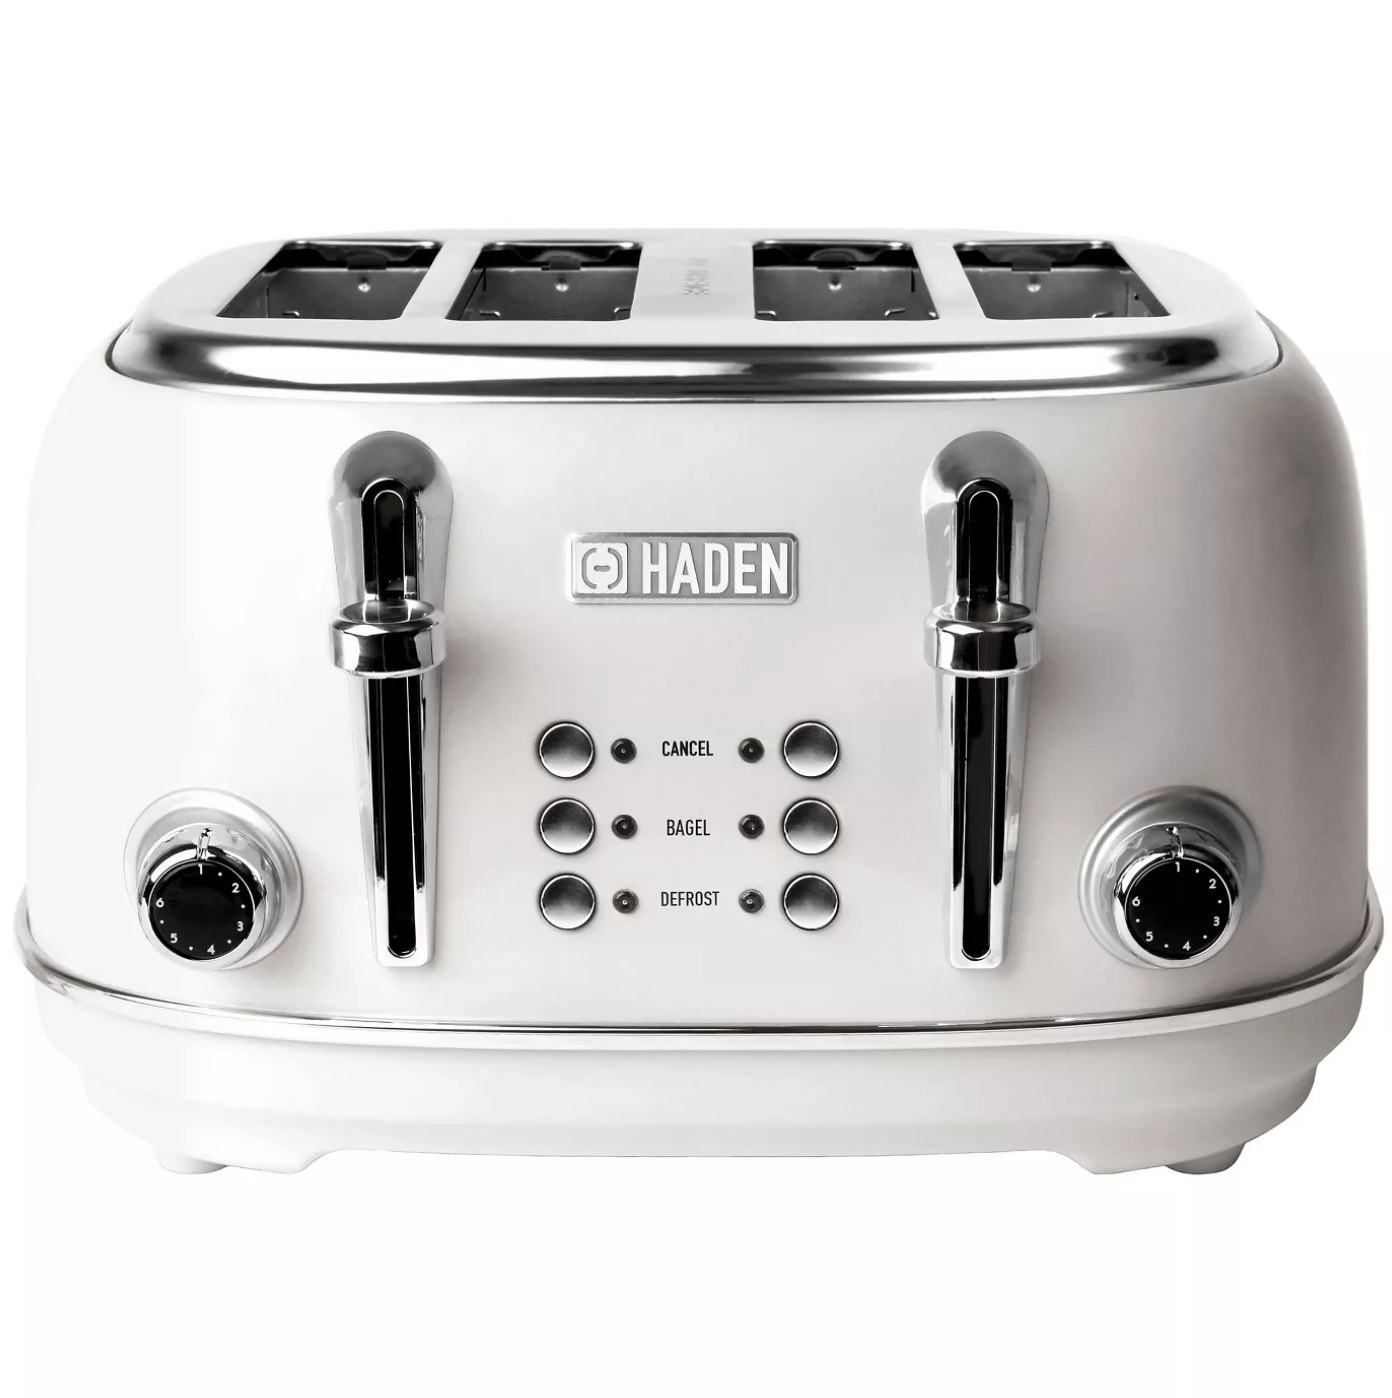 The white retro toaster